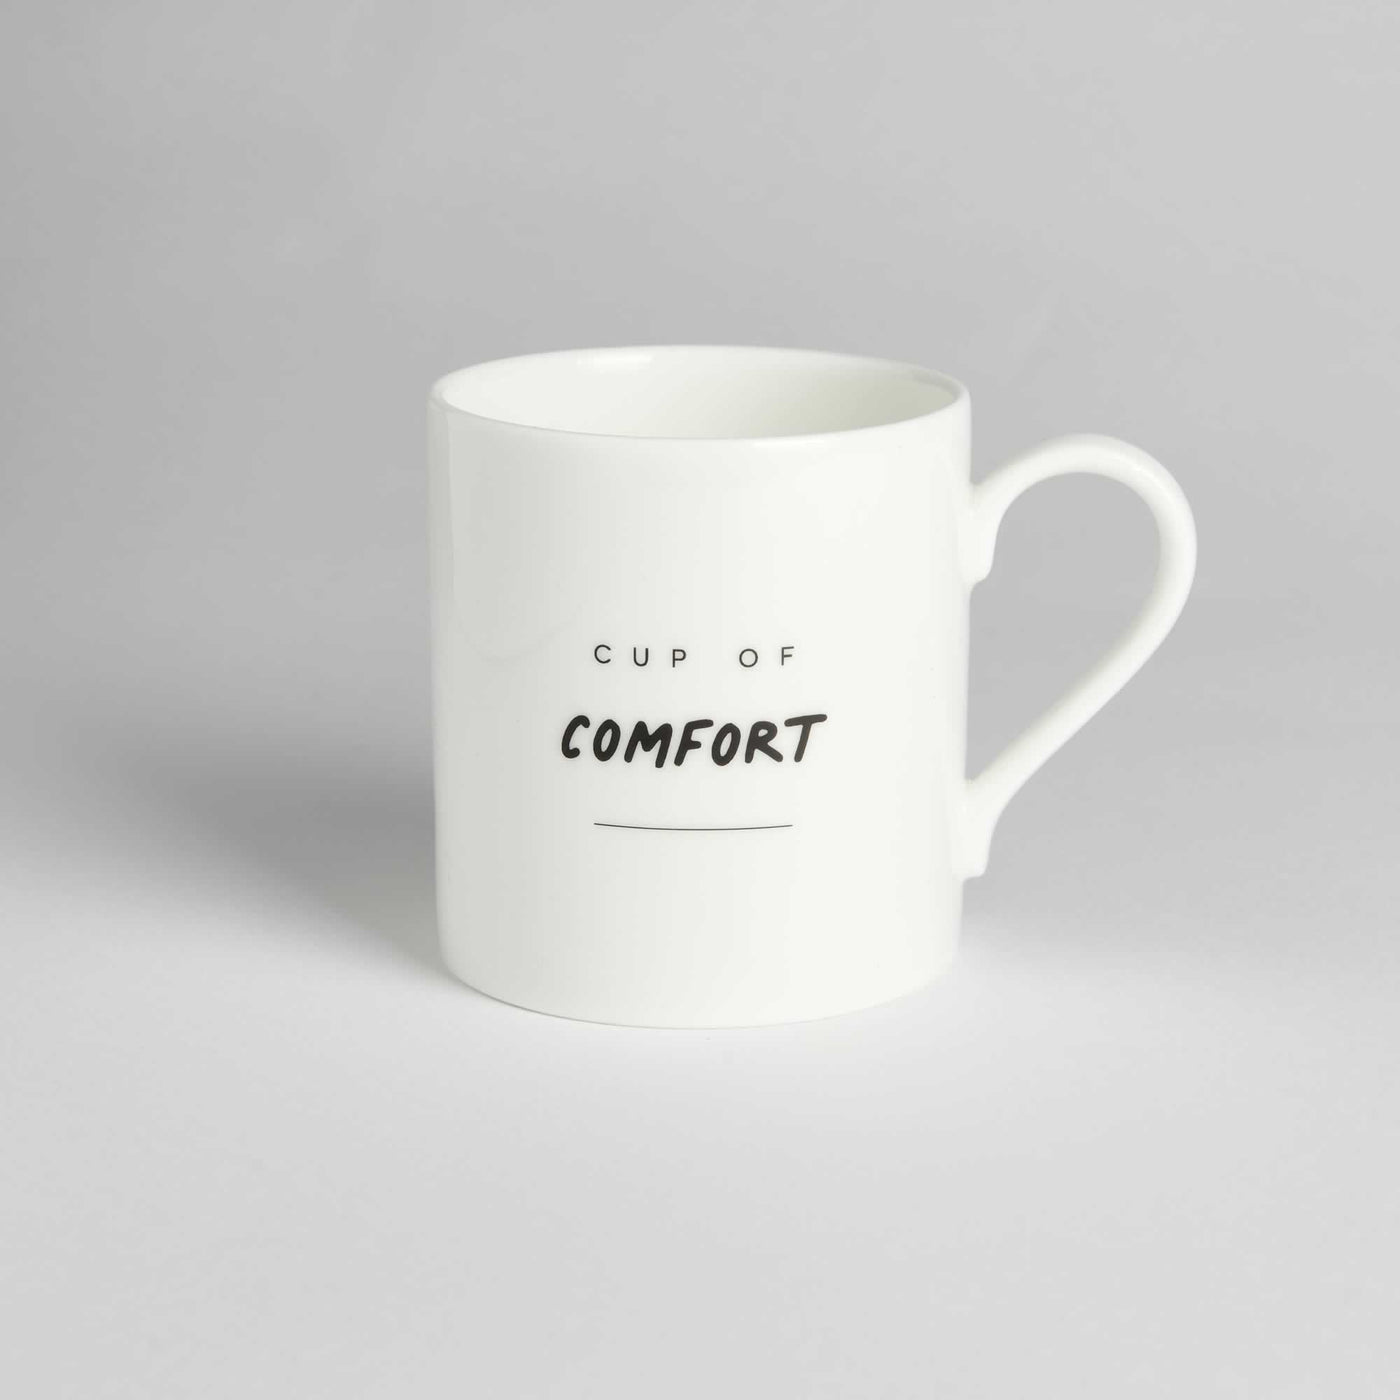 Cup of Comfort Mug